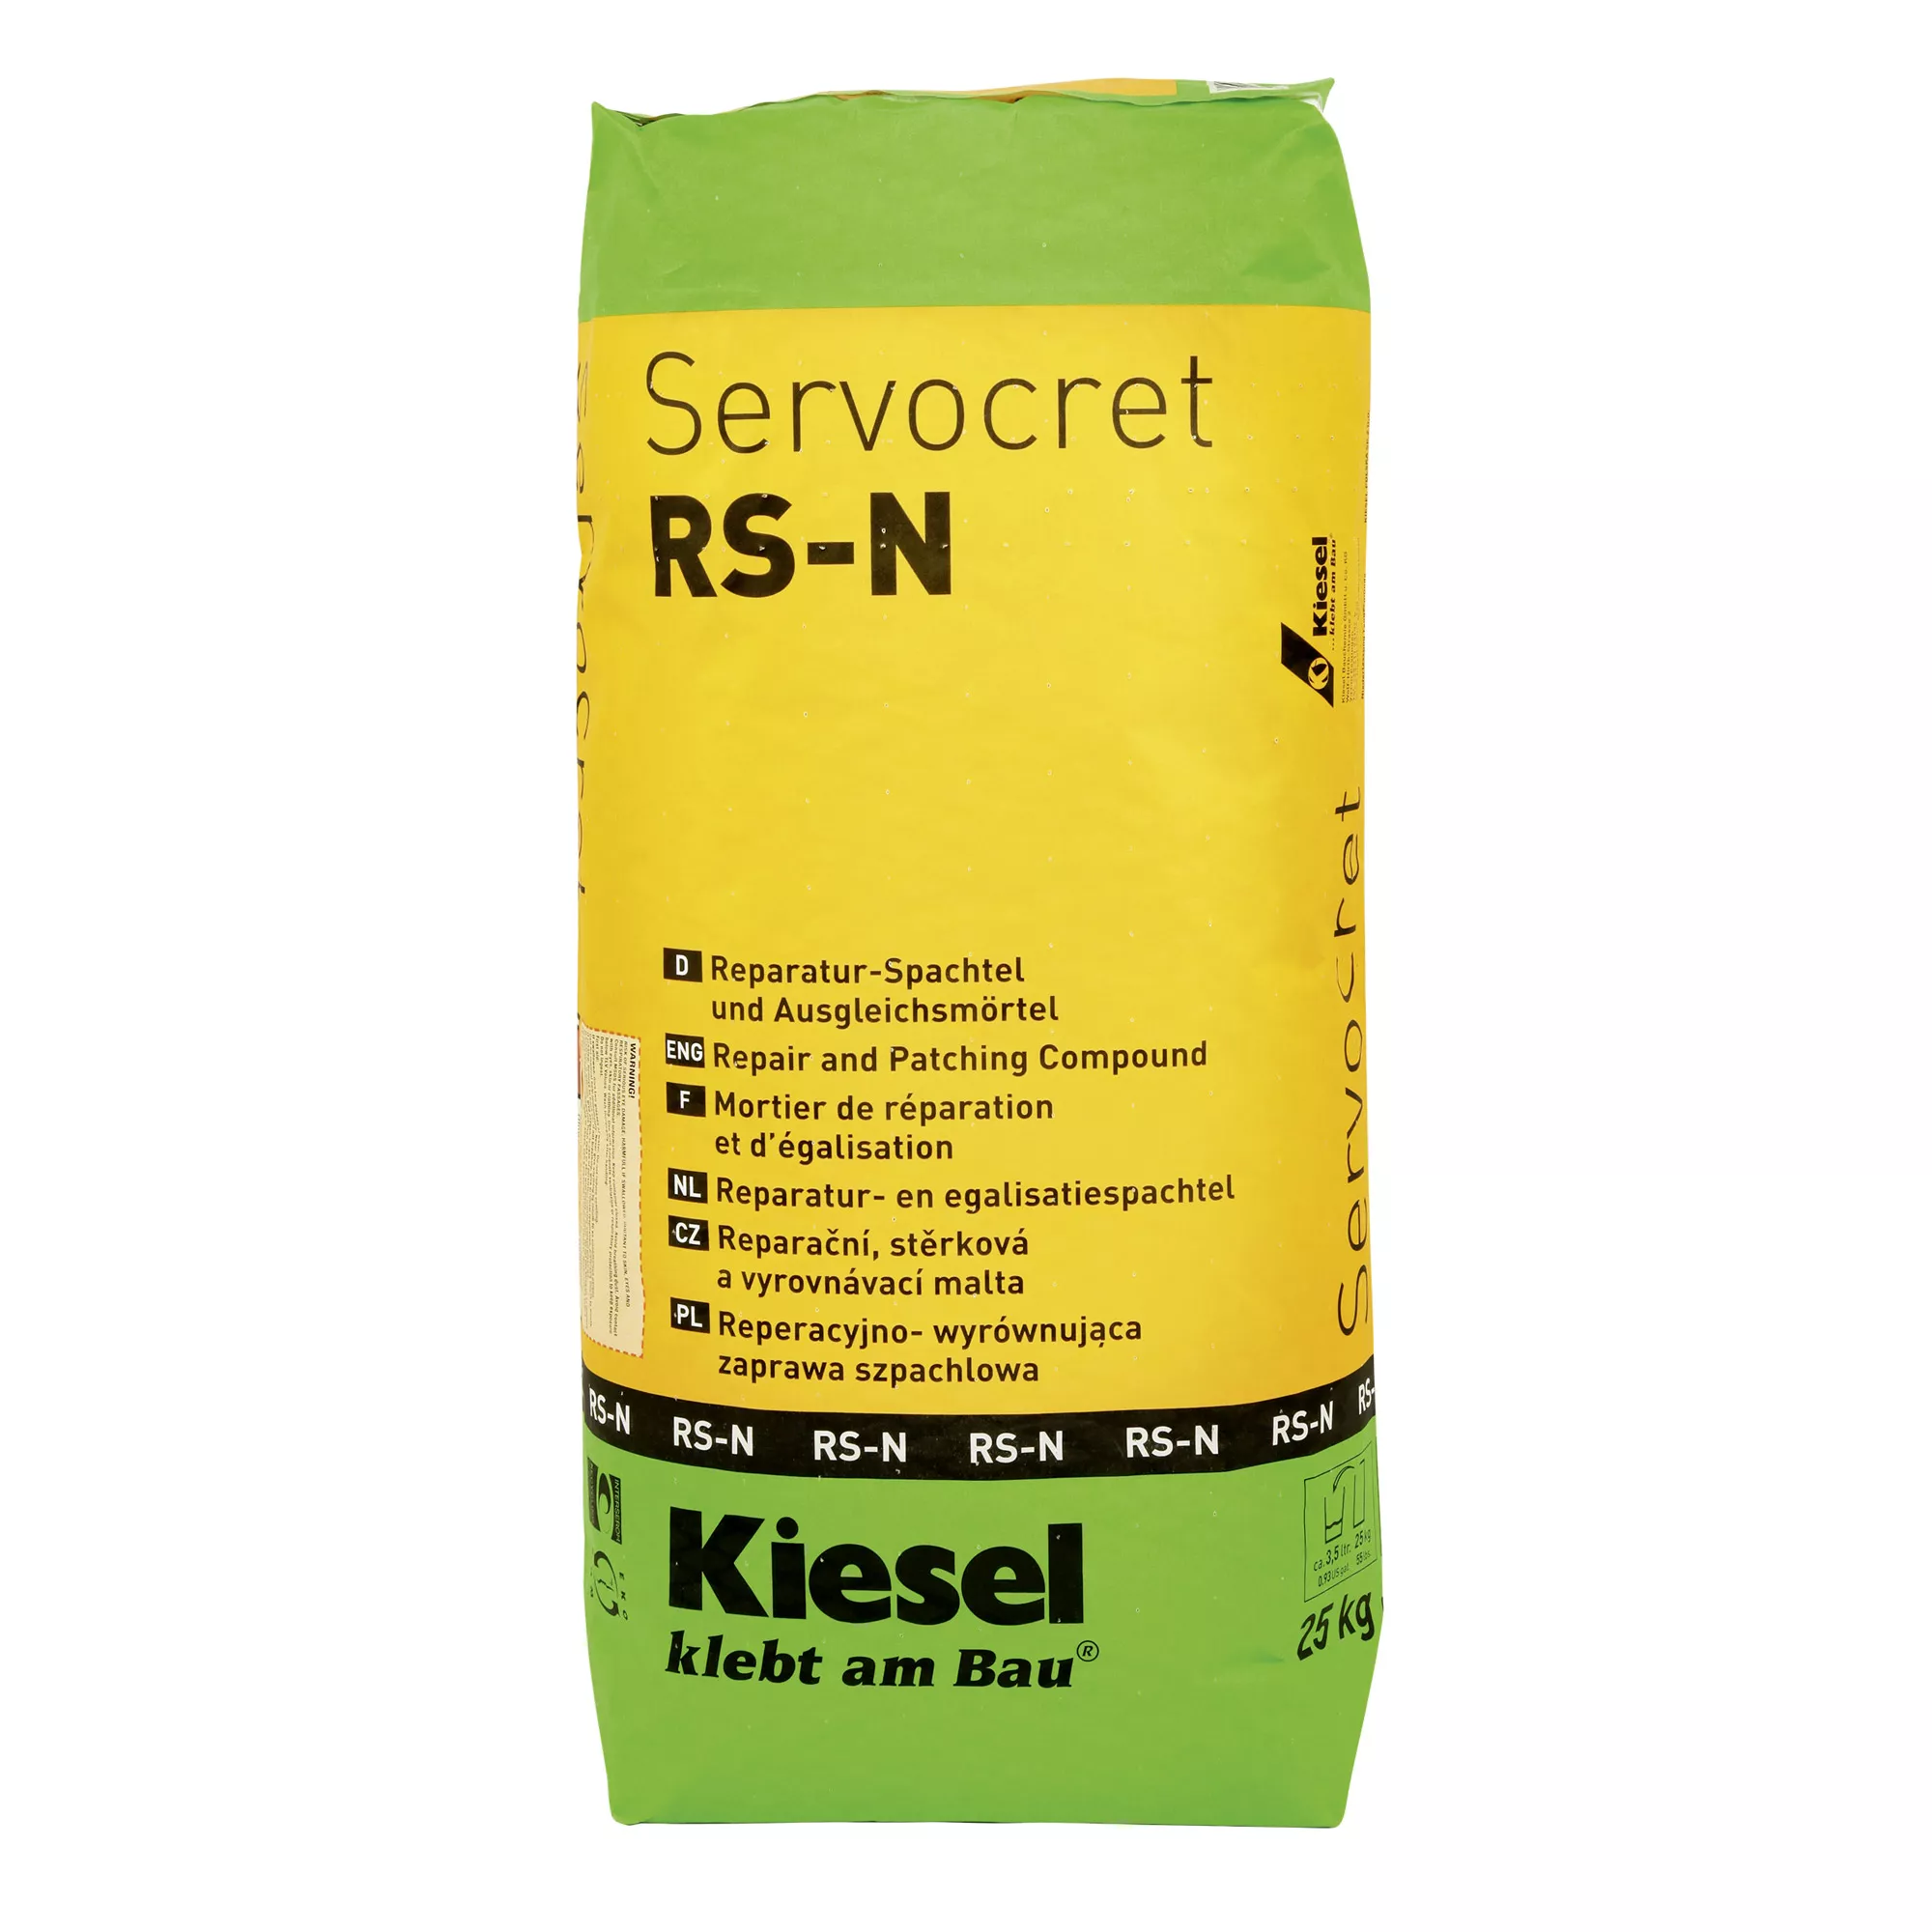 Kiesel Servocret RS-N - Masilla De Reparación Y Mortero De Nivelación (25KG)